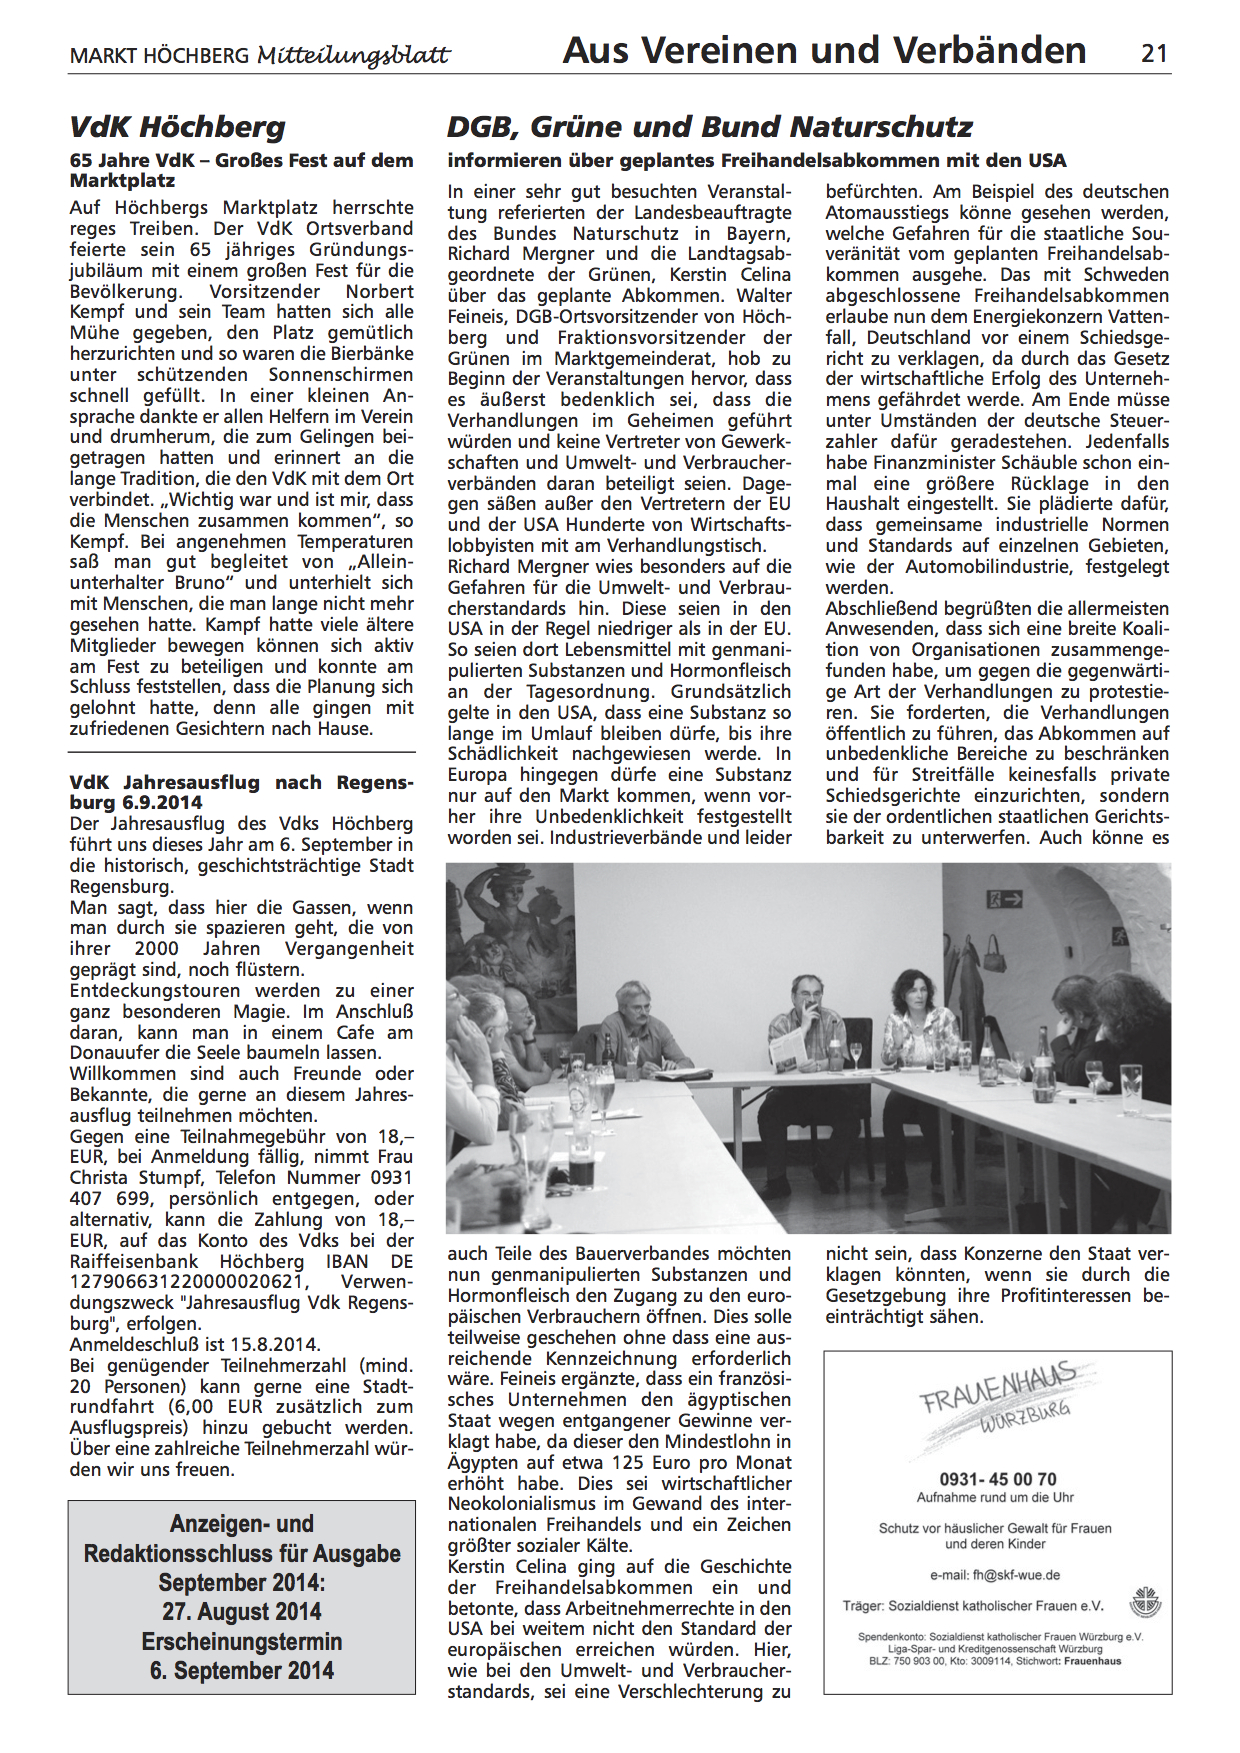 Artikel im Höchberger Mitteilungsblatt über die TTIP-Veranstaltung in Höchberg